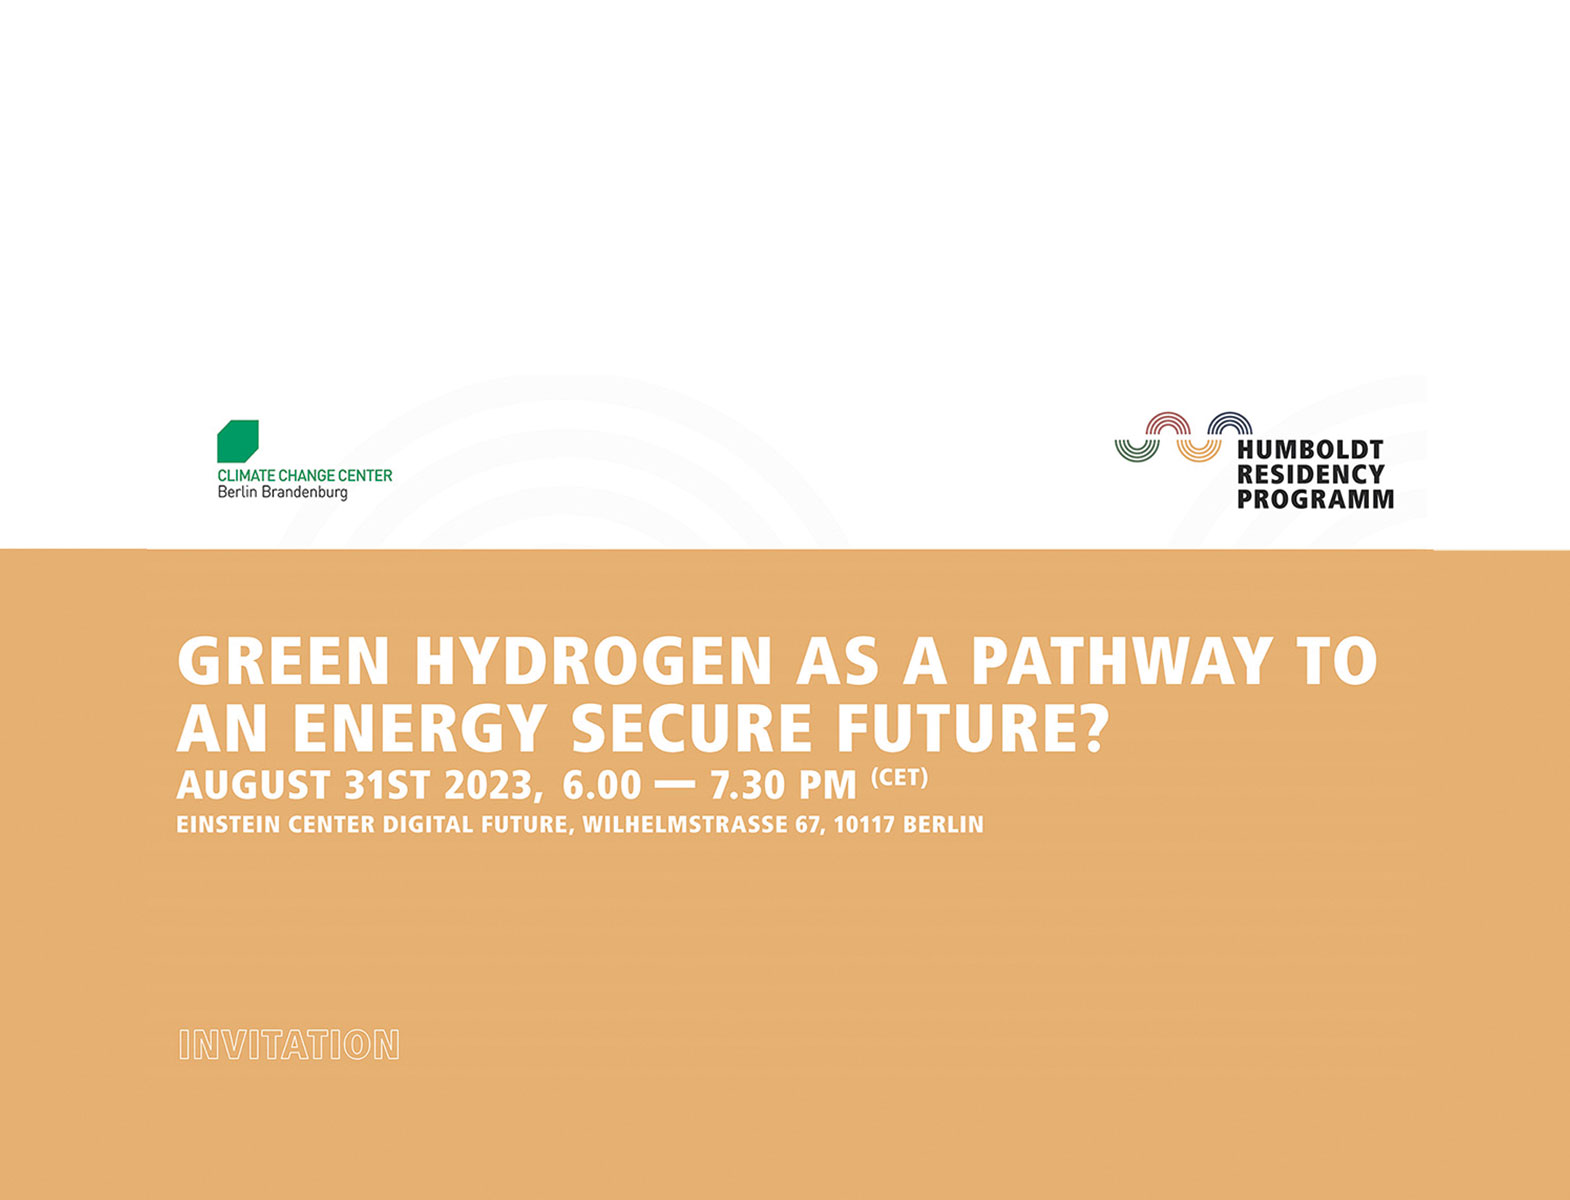 Grüner Wasserstoff als Energieträger der Zukunft